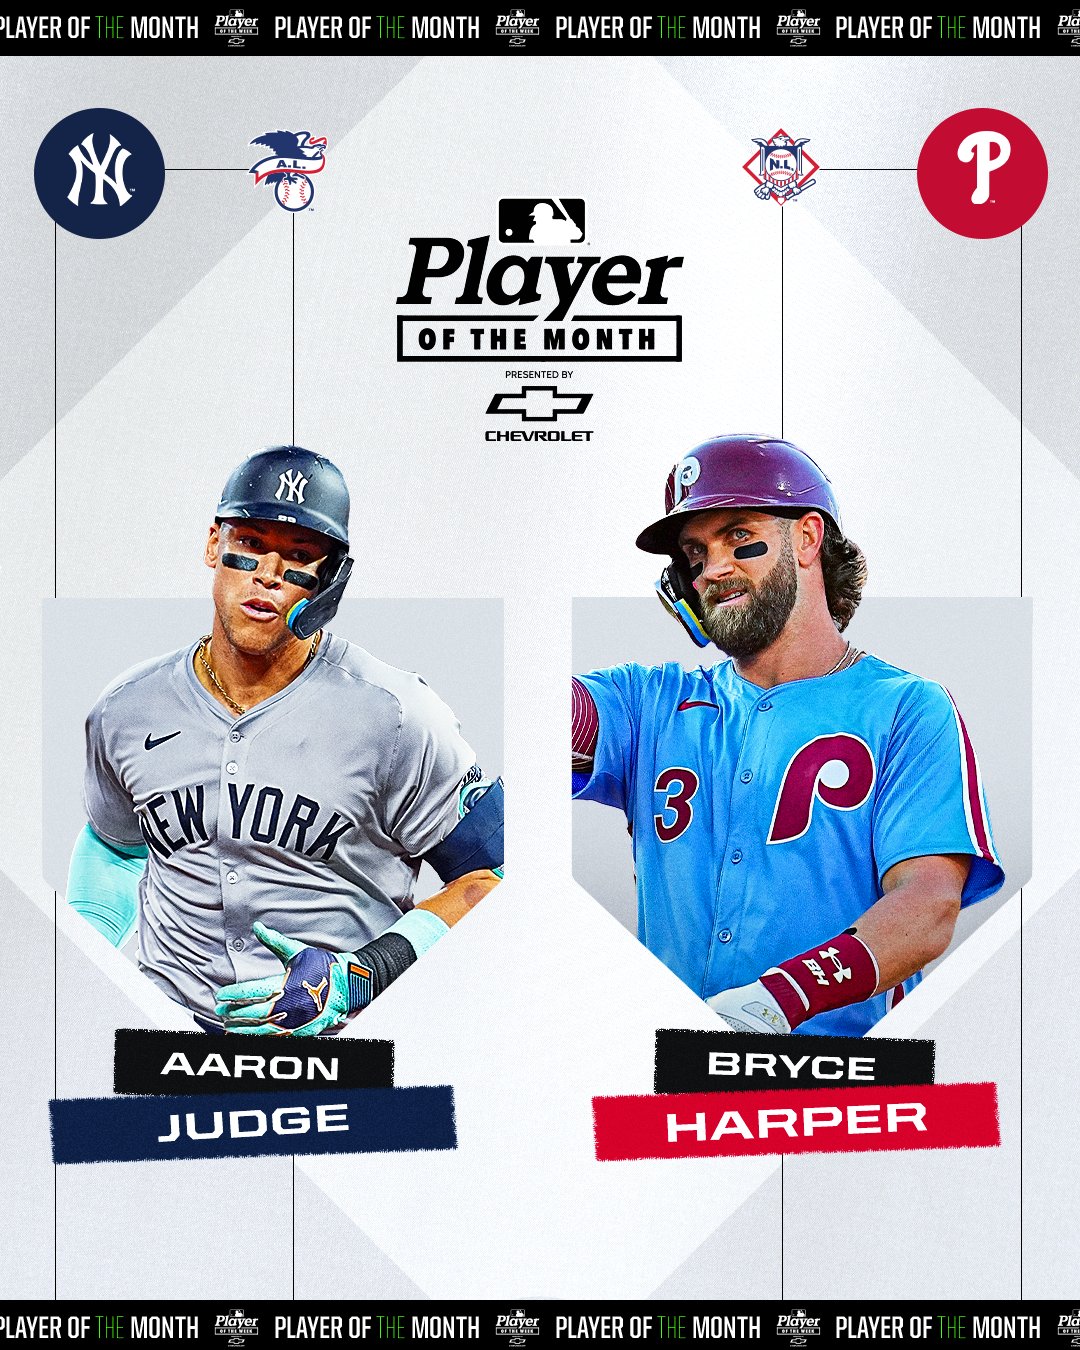 OFICIAL: Aaron Judge y Bryce Harper REPITIERON, MLB anunció MVP 1